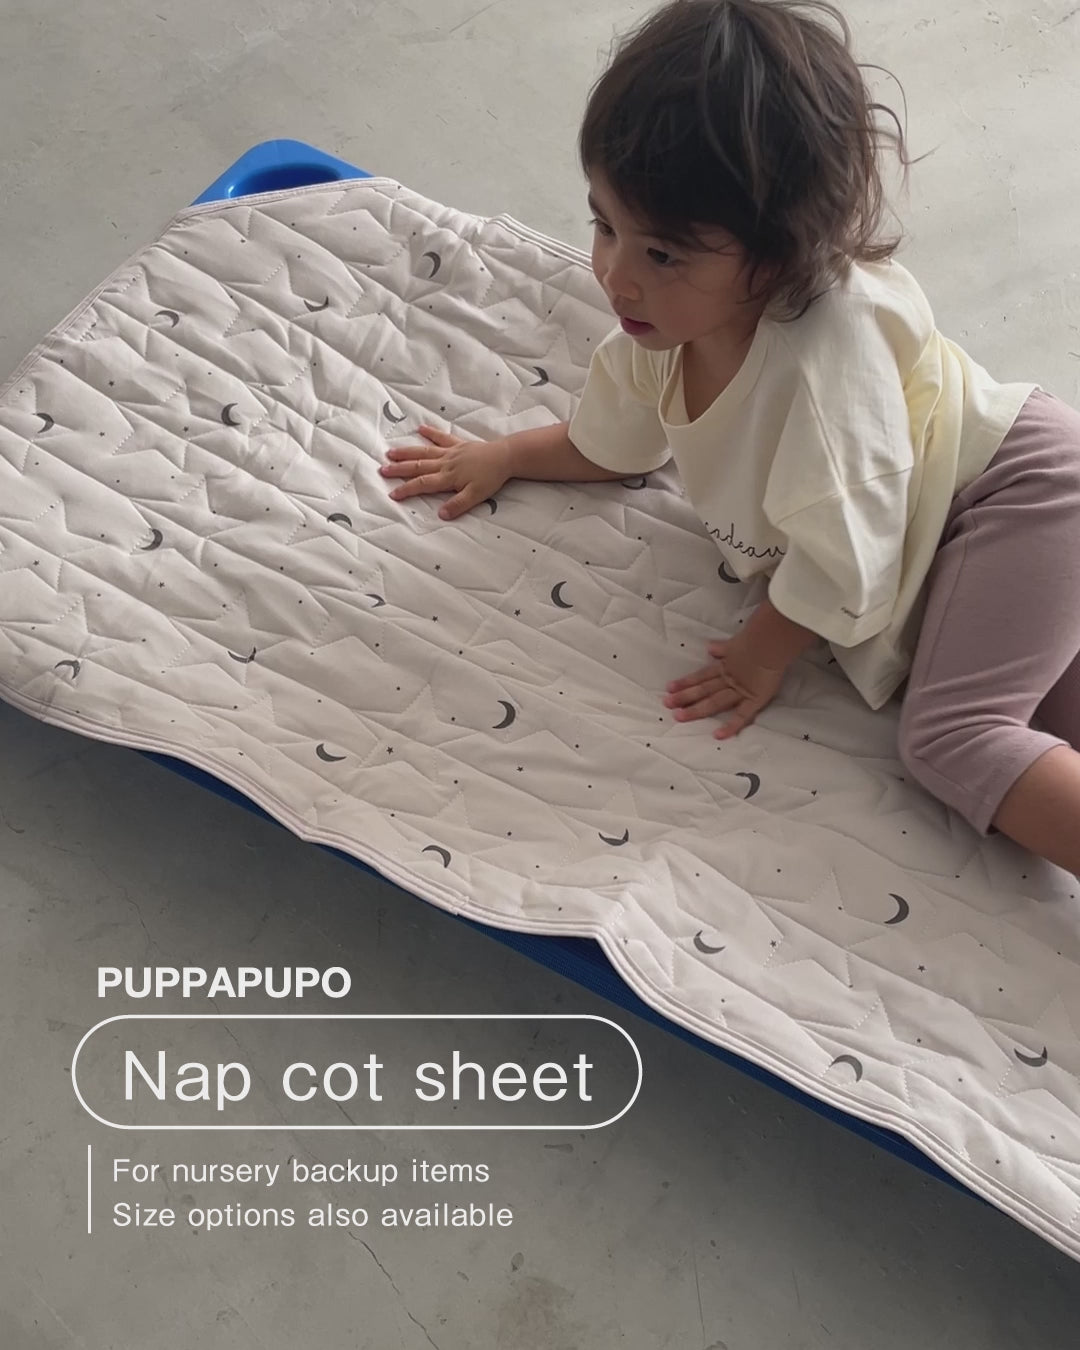 Nap cot sheet